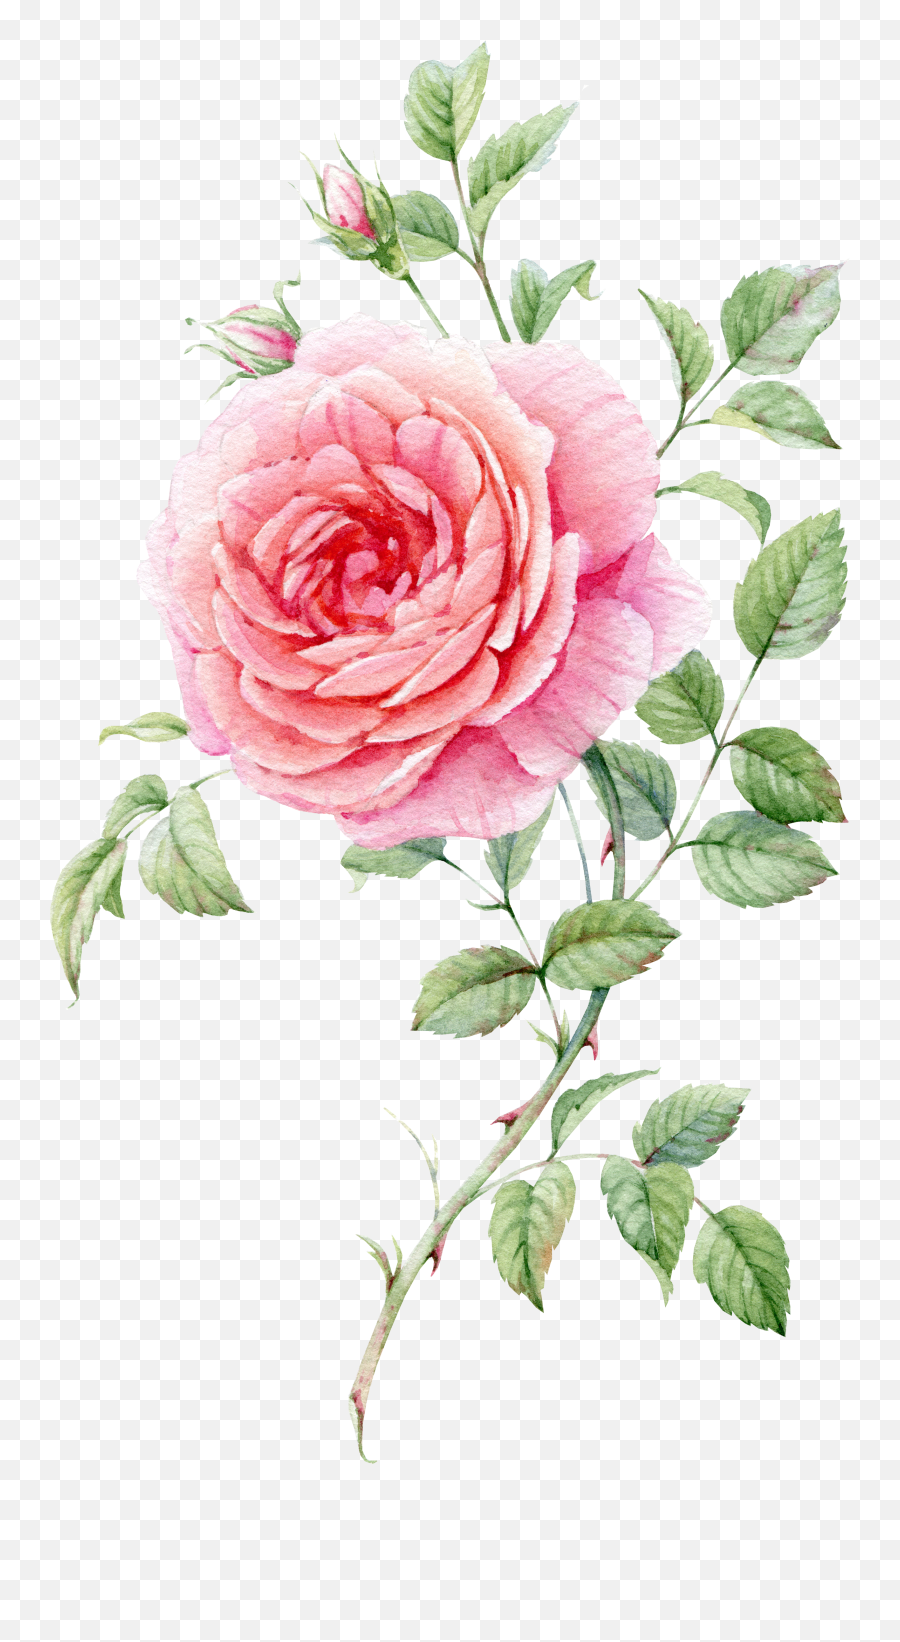 1 Blooming Rose Watercolor - Rose Watercolor Flower Painting Png,Watercolor Roses Png